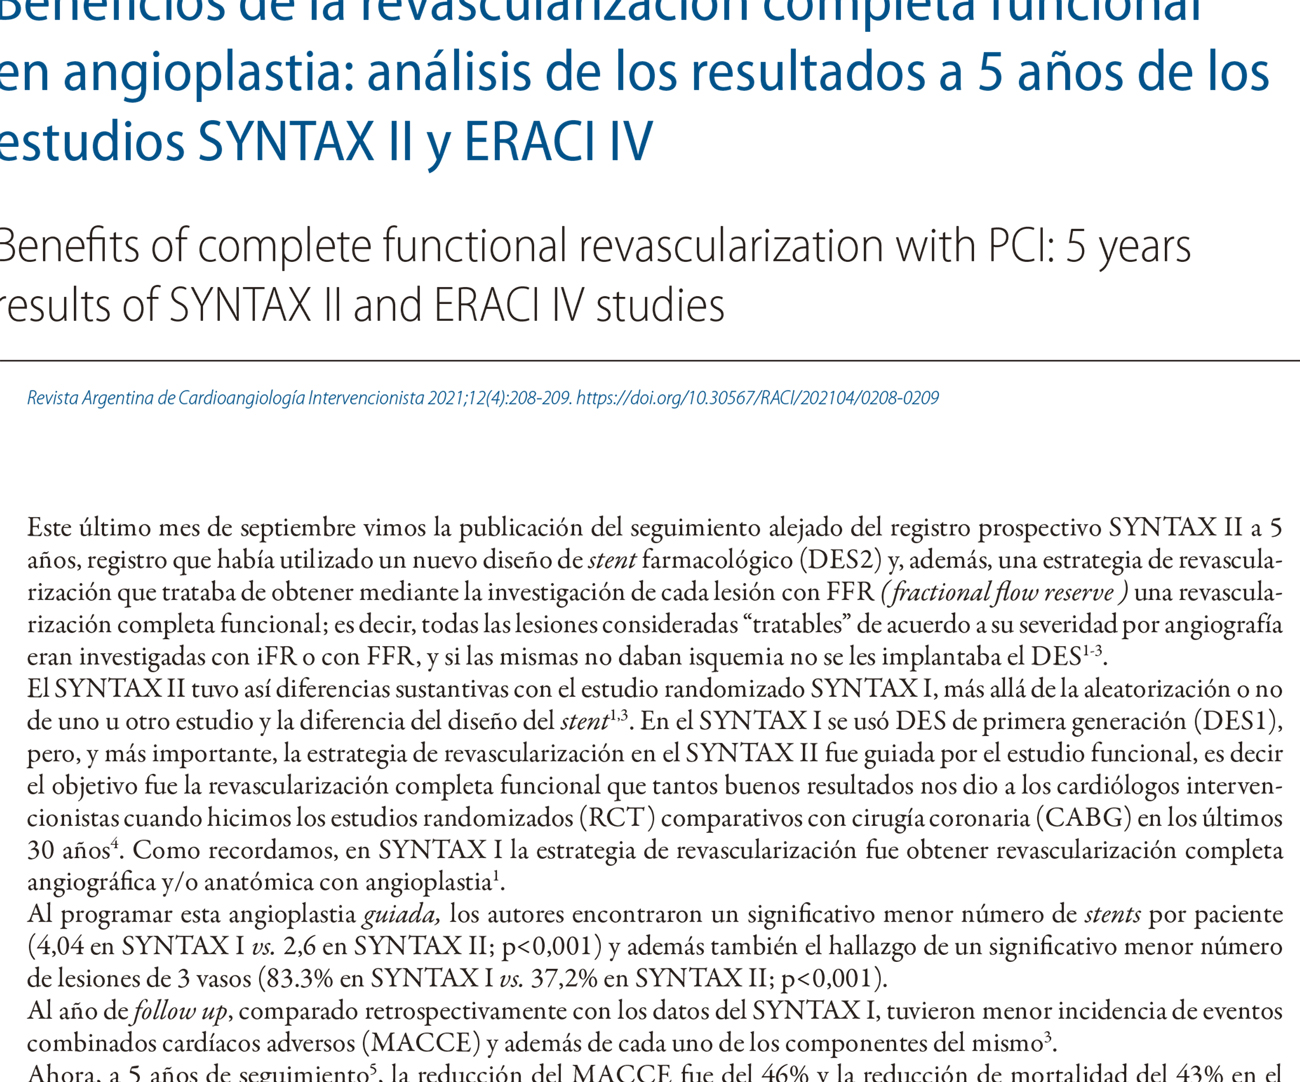 Beneficios de la revascularización completa funcional en angioplastia: análisis de los resultados a 5 años de los estudios SYNTAX II y ERACI IV